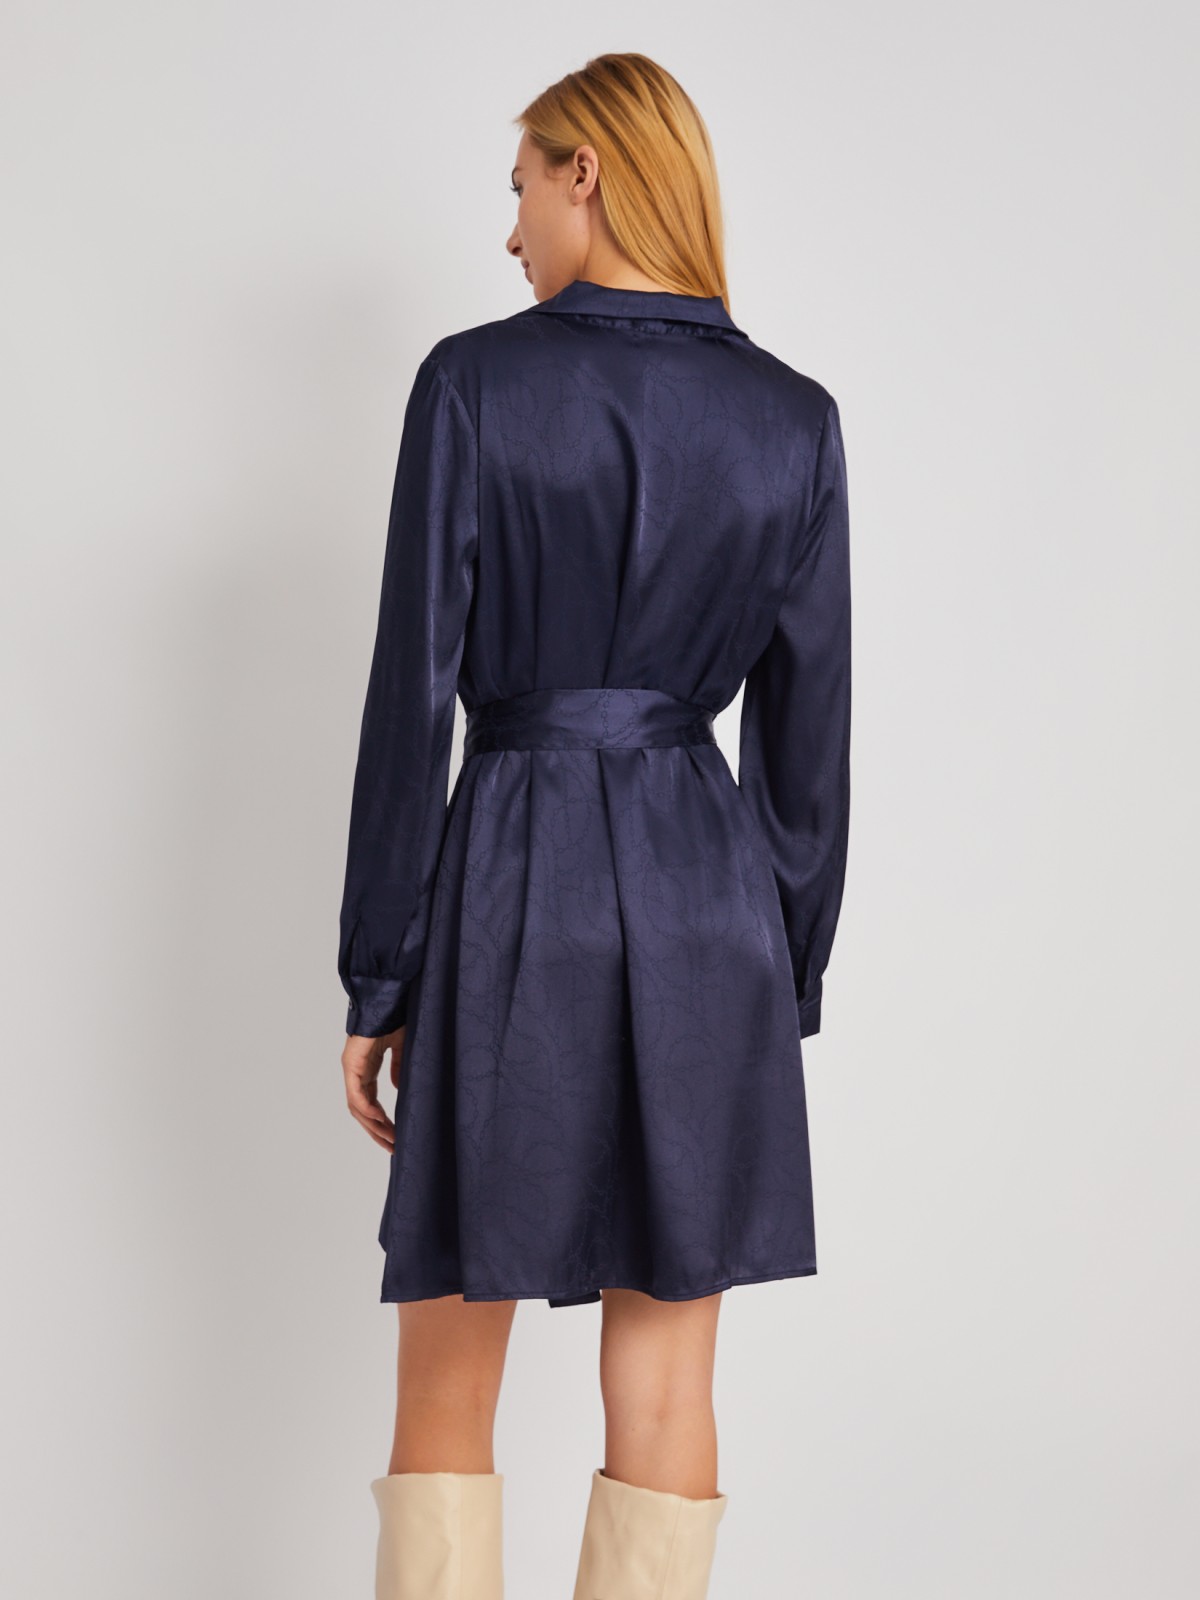 Атласное платье длины мини с воротником и акцентном на талии zolla 024118262193, цвет синий, размер XS - фото 6